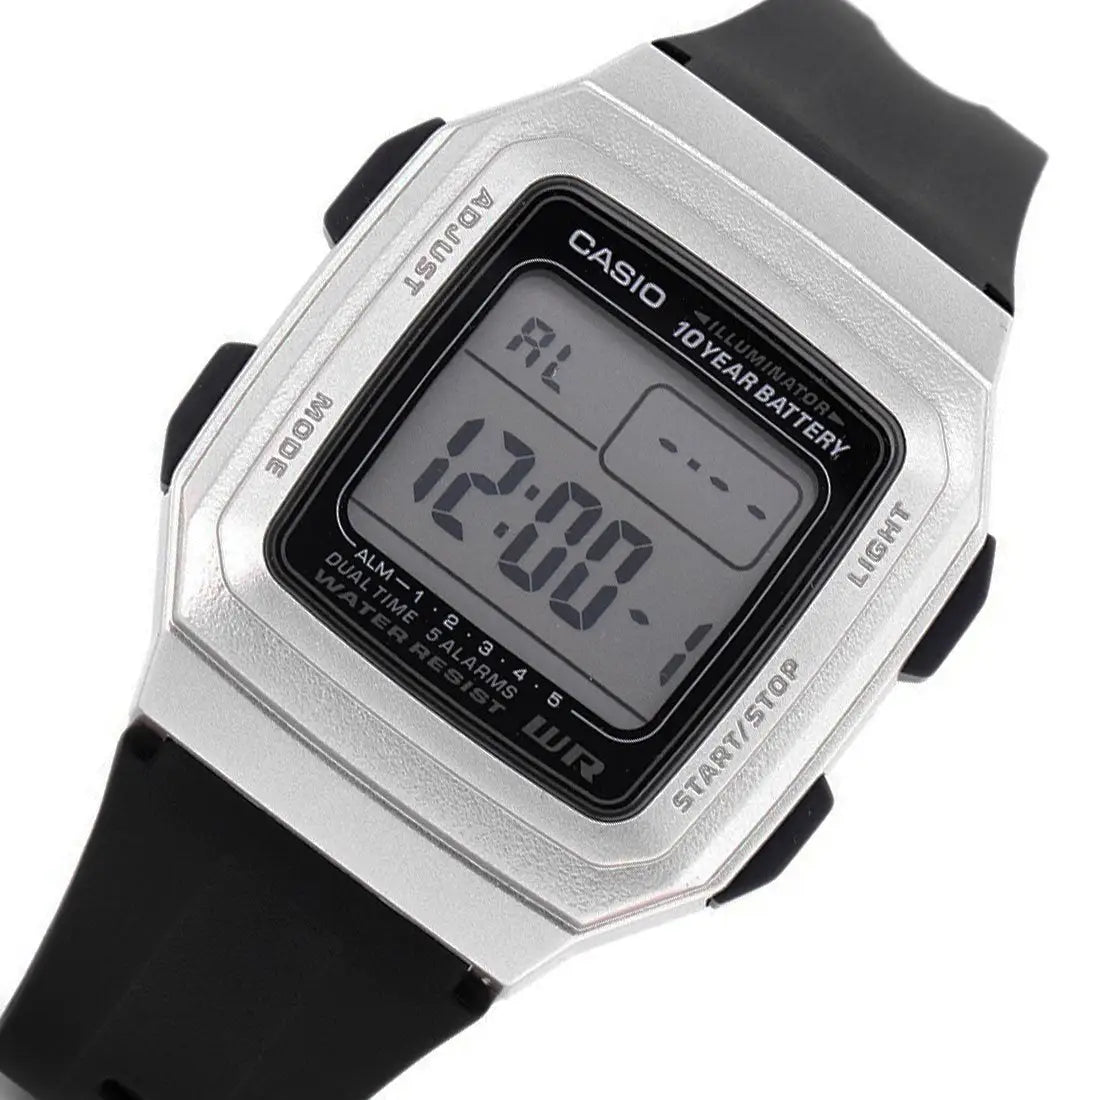 Casio F201wam-7av Digital Watch Black Resin Band 5 Alarms 10